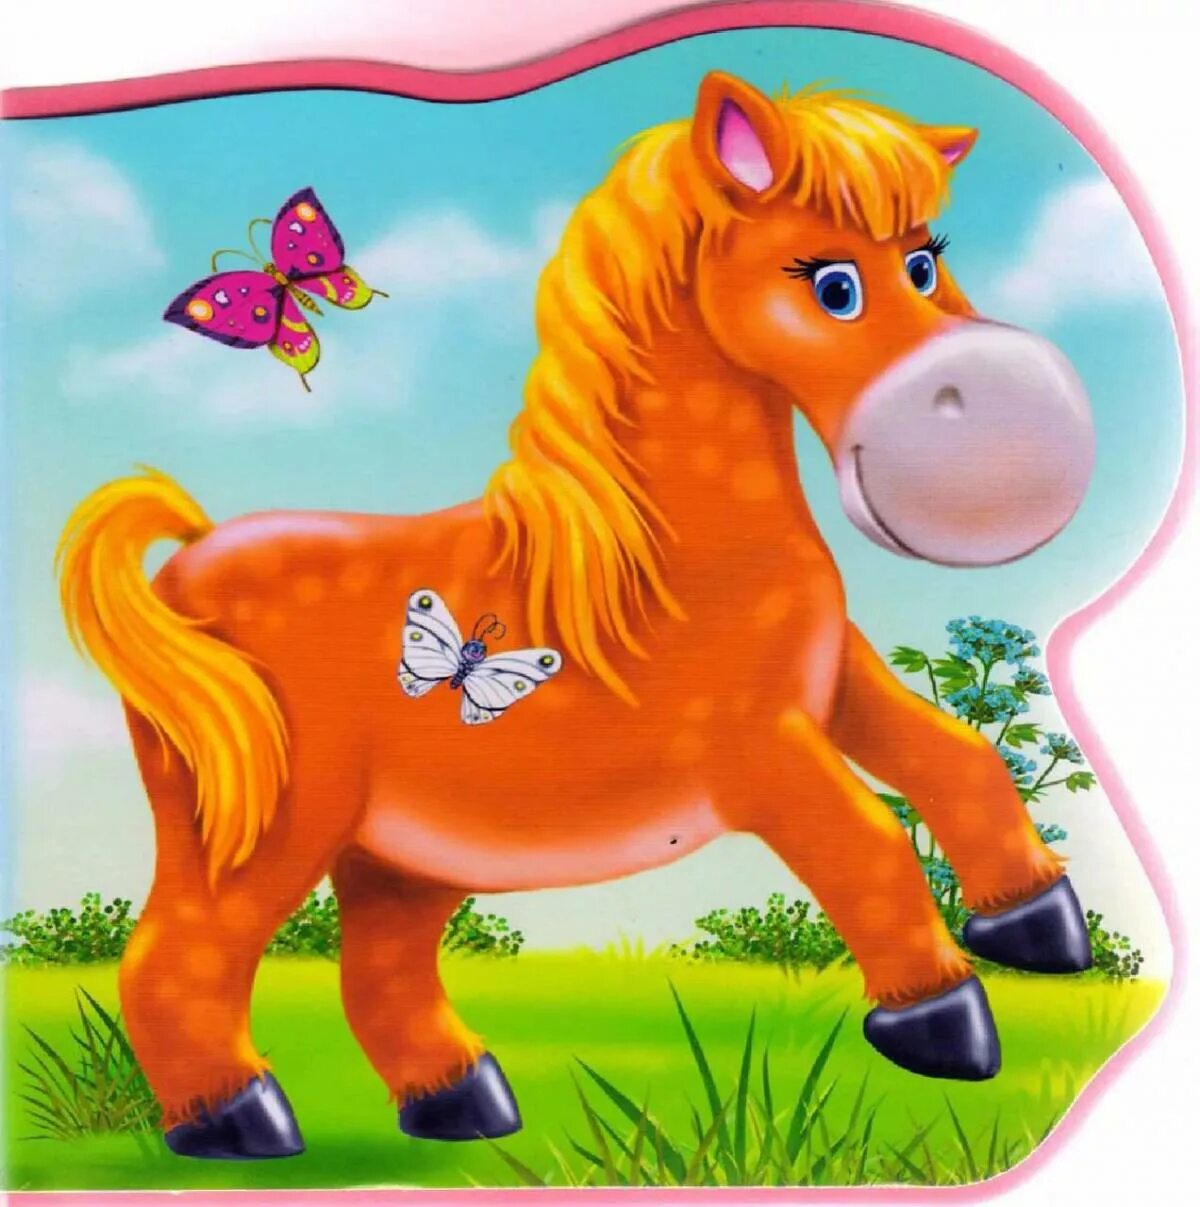 Лошадки 1 2 3. Лошадки для малышей. Лошадка для дошкольников. Лашадки дляма лень кихдете. Разноцветные лошадки для детей.